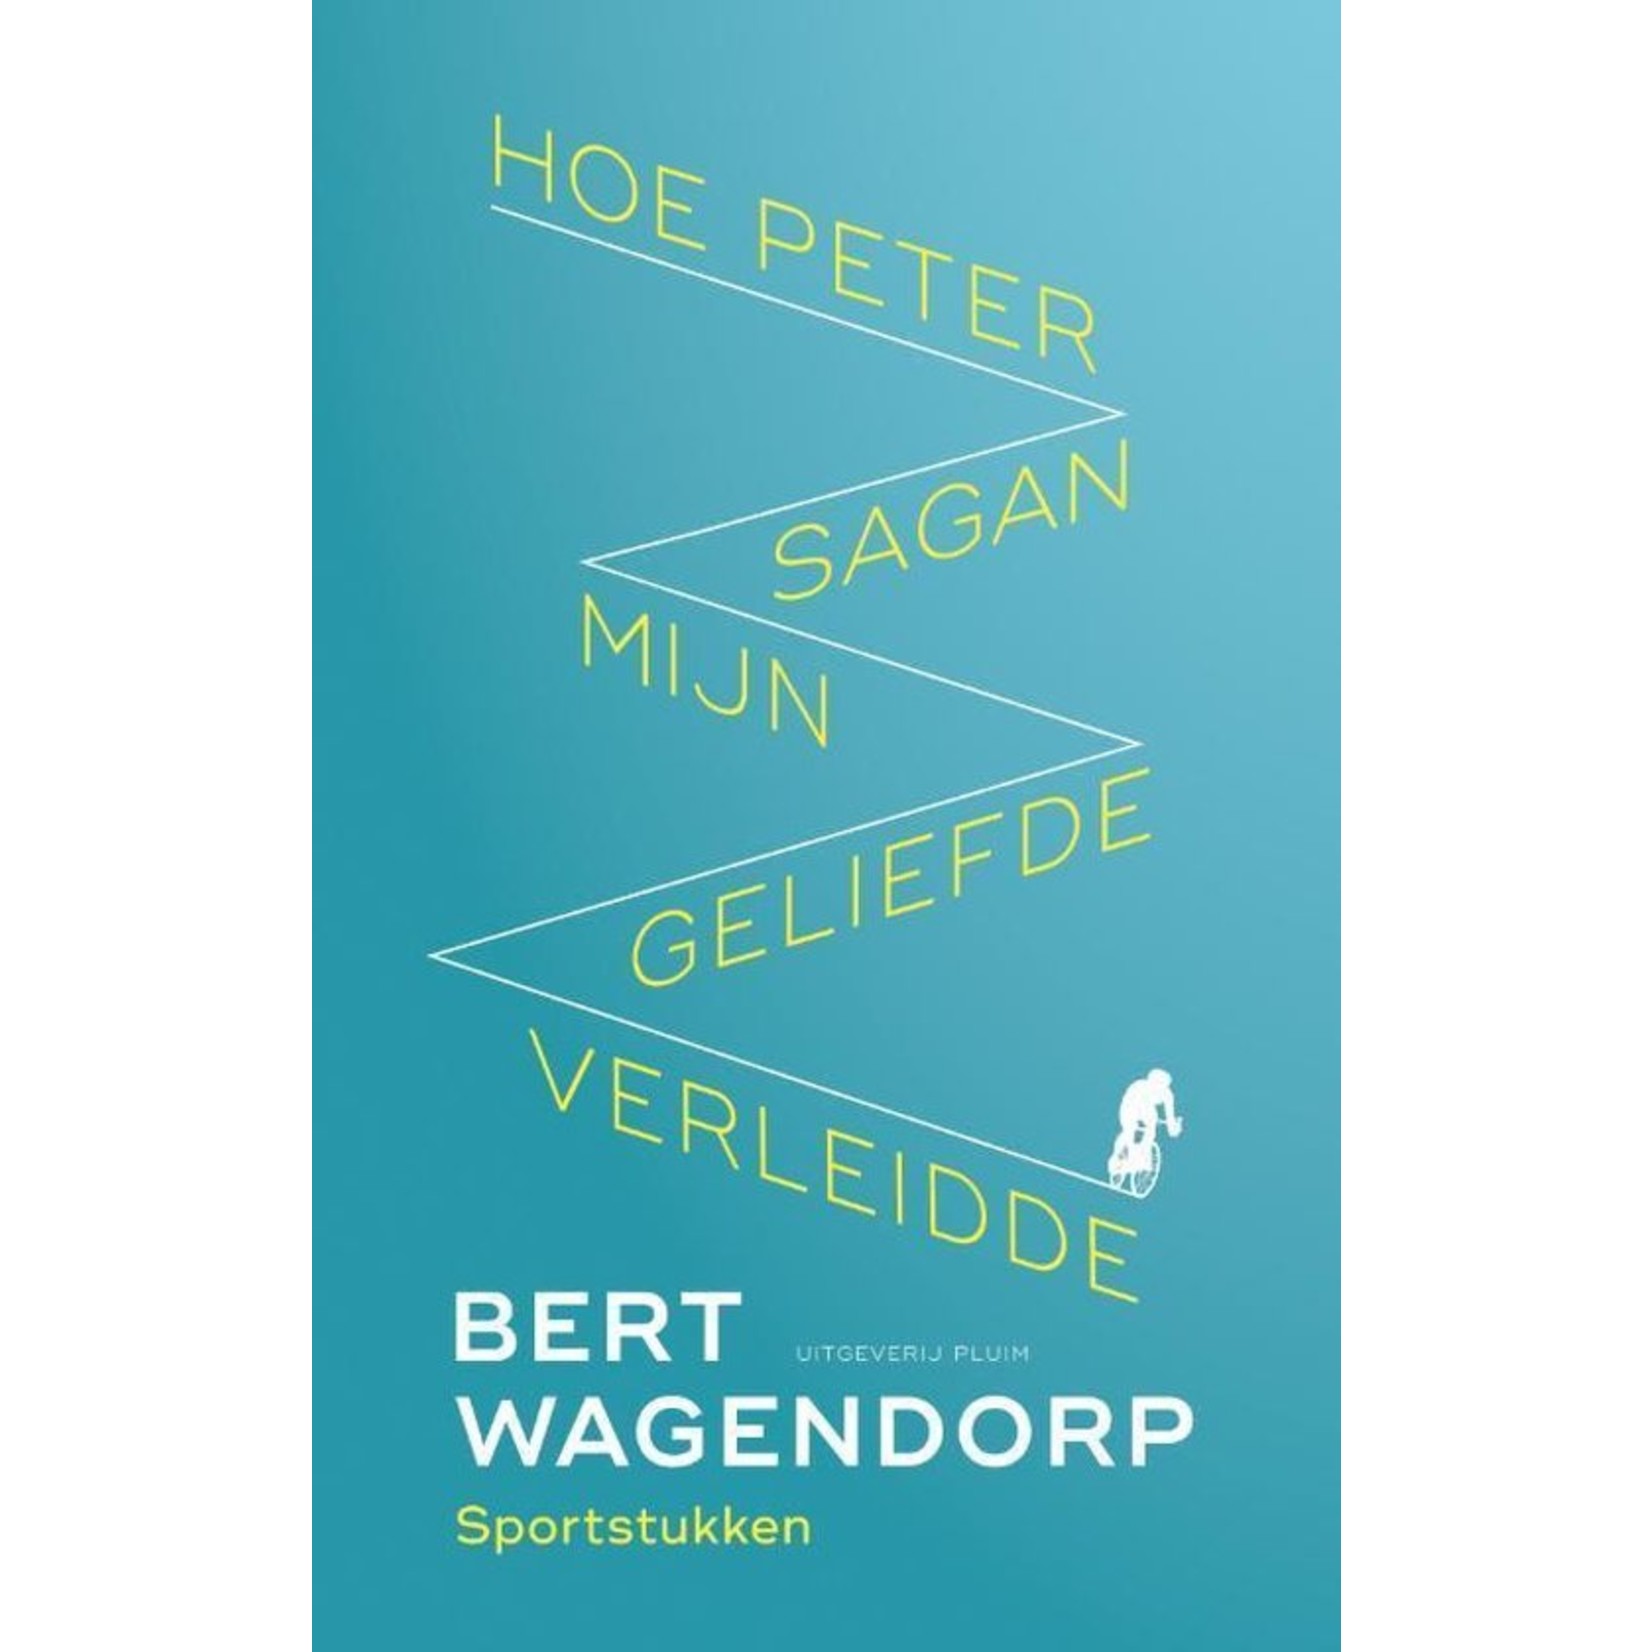 Boek 'Hoe Peter Sagan mijn geliefde verleidde'